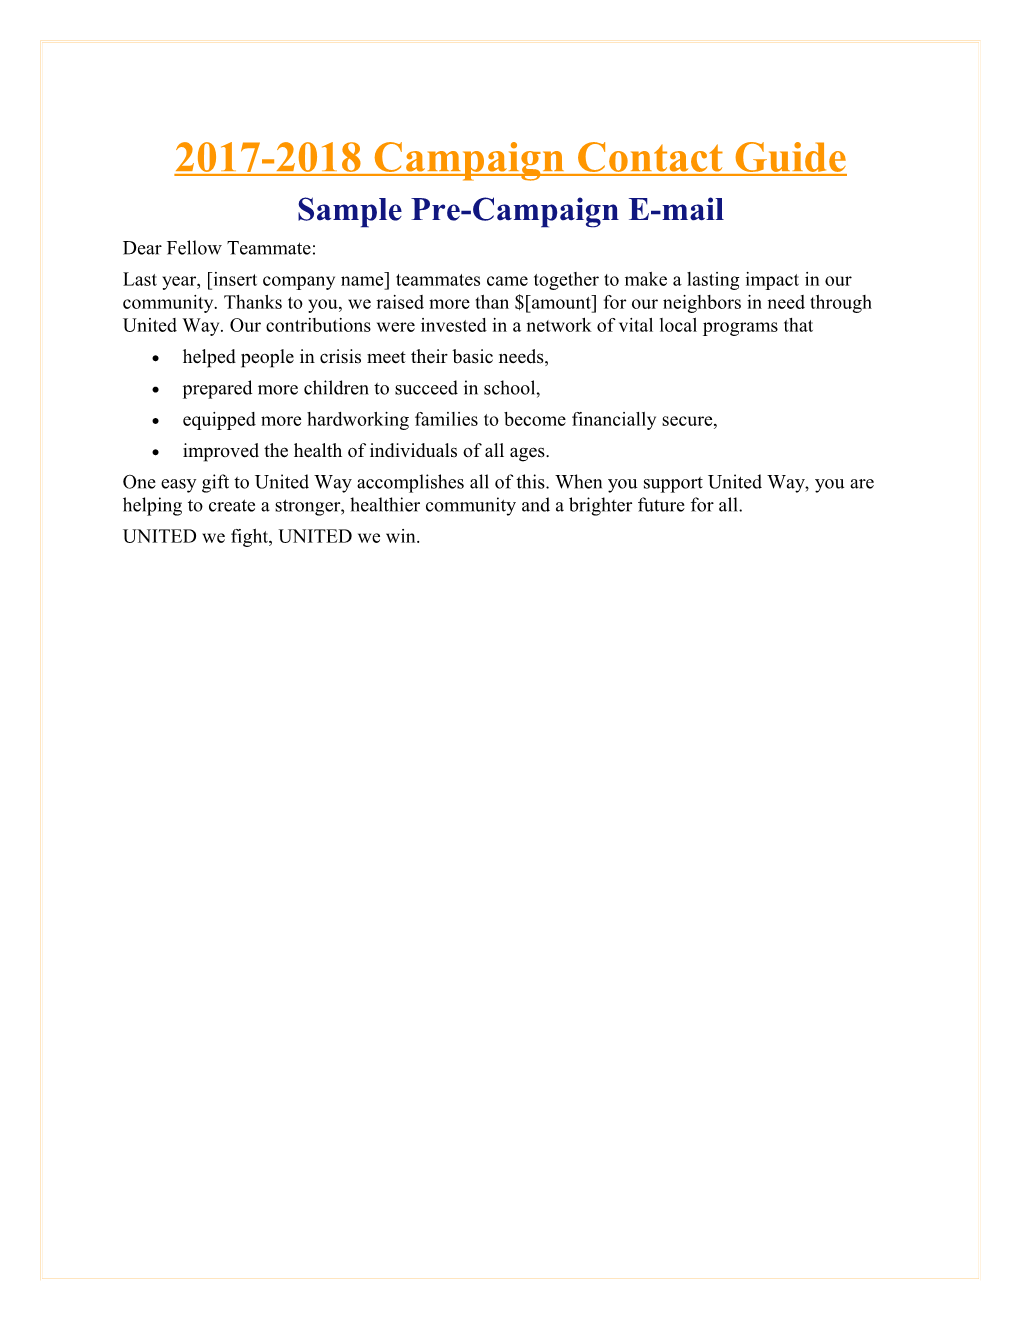 Sample Pre-Campaign E-Mail